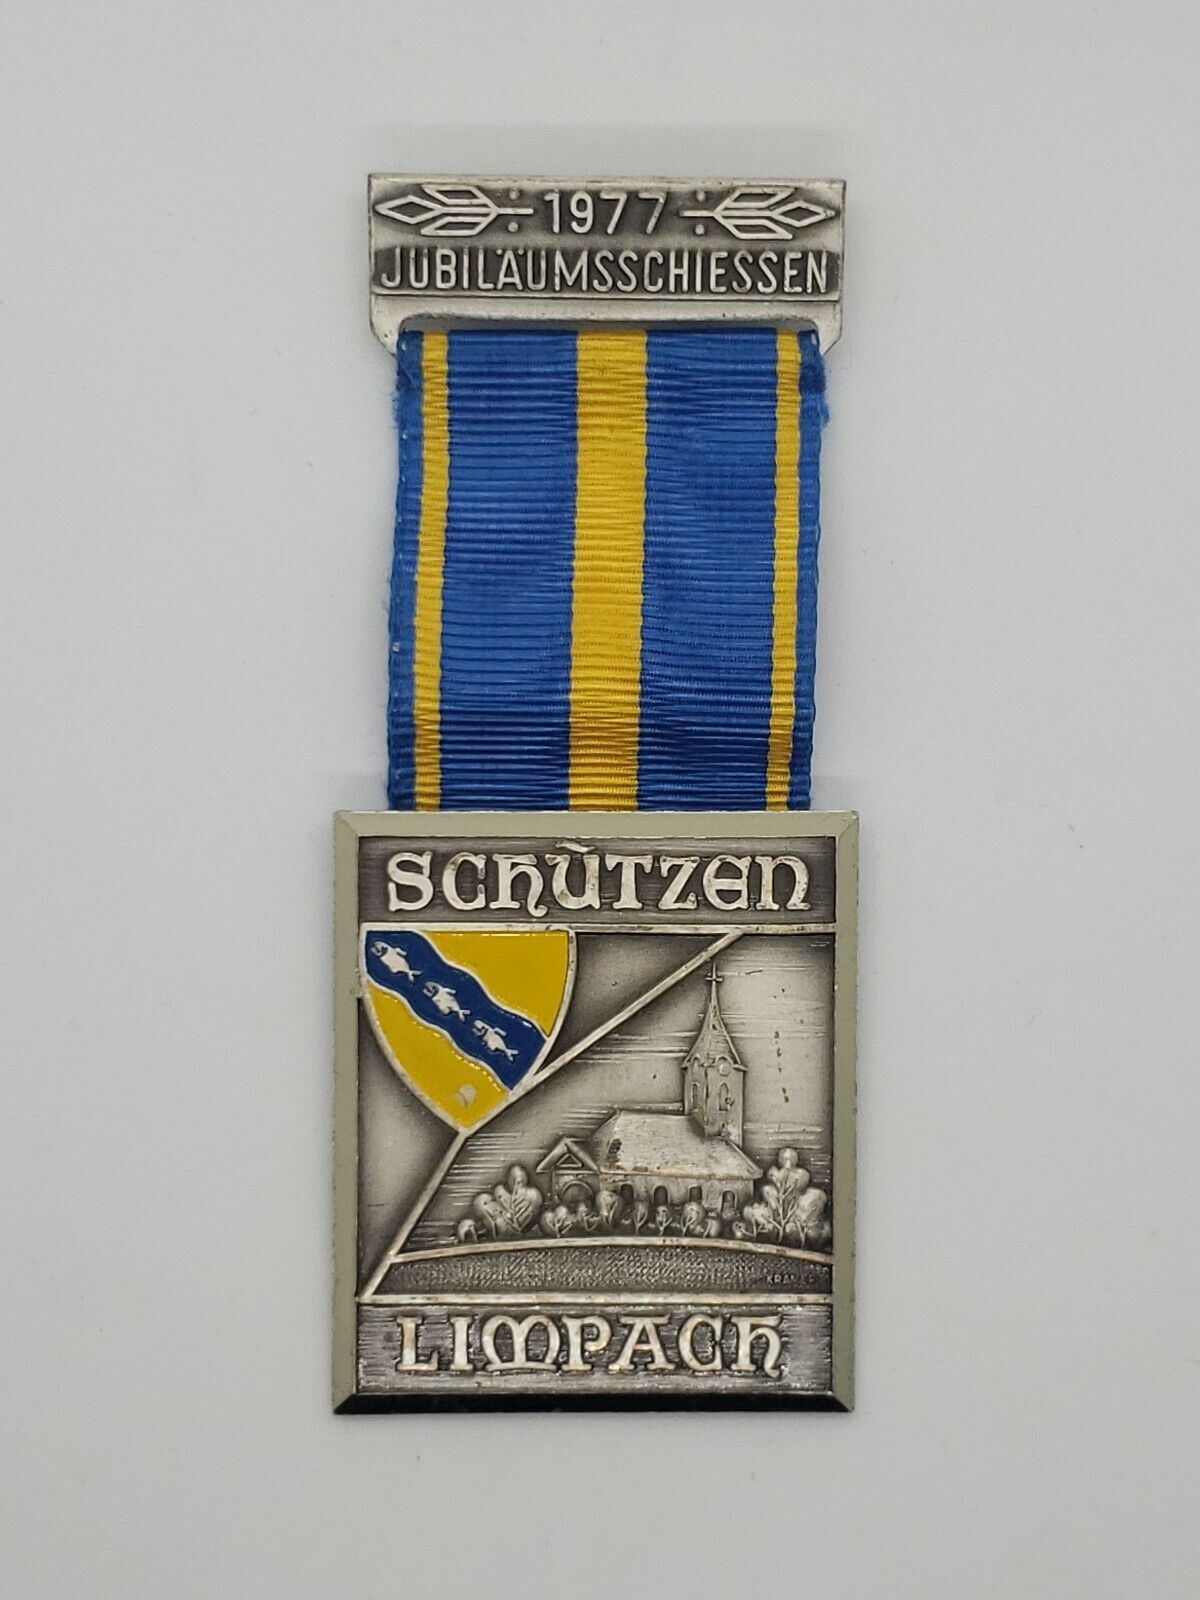 1977 German Jubilaumsschiessen Medal